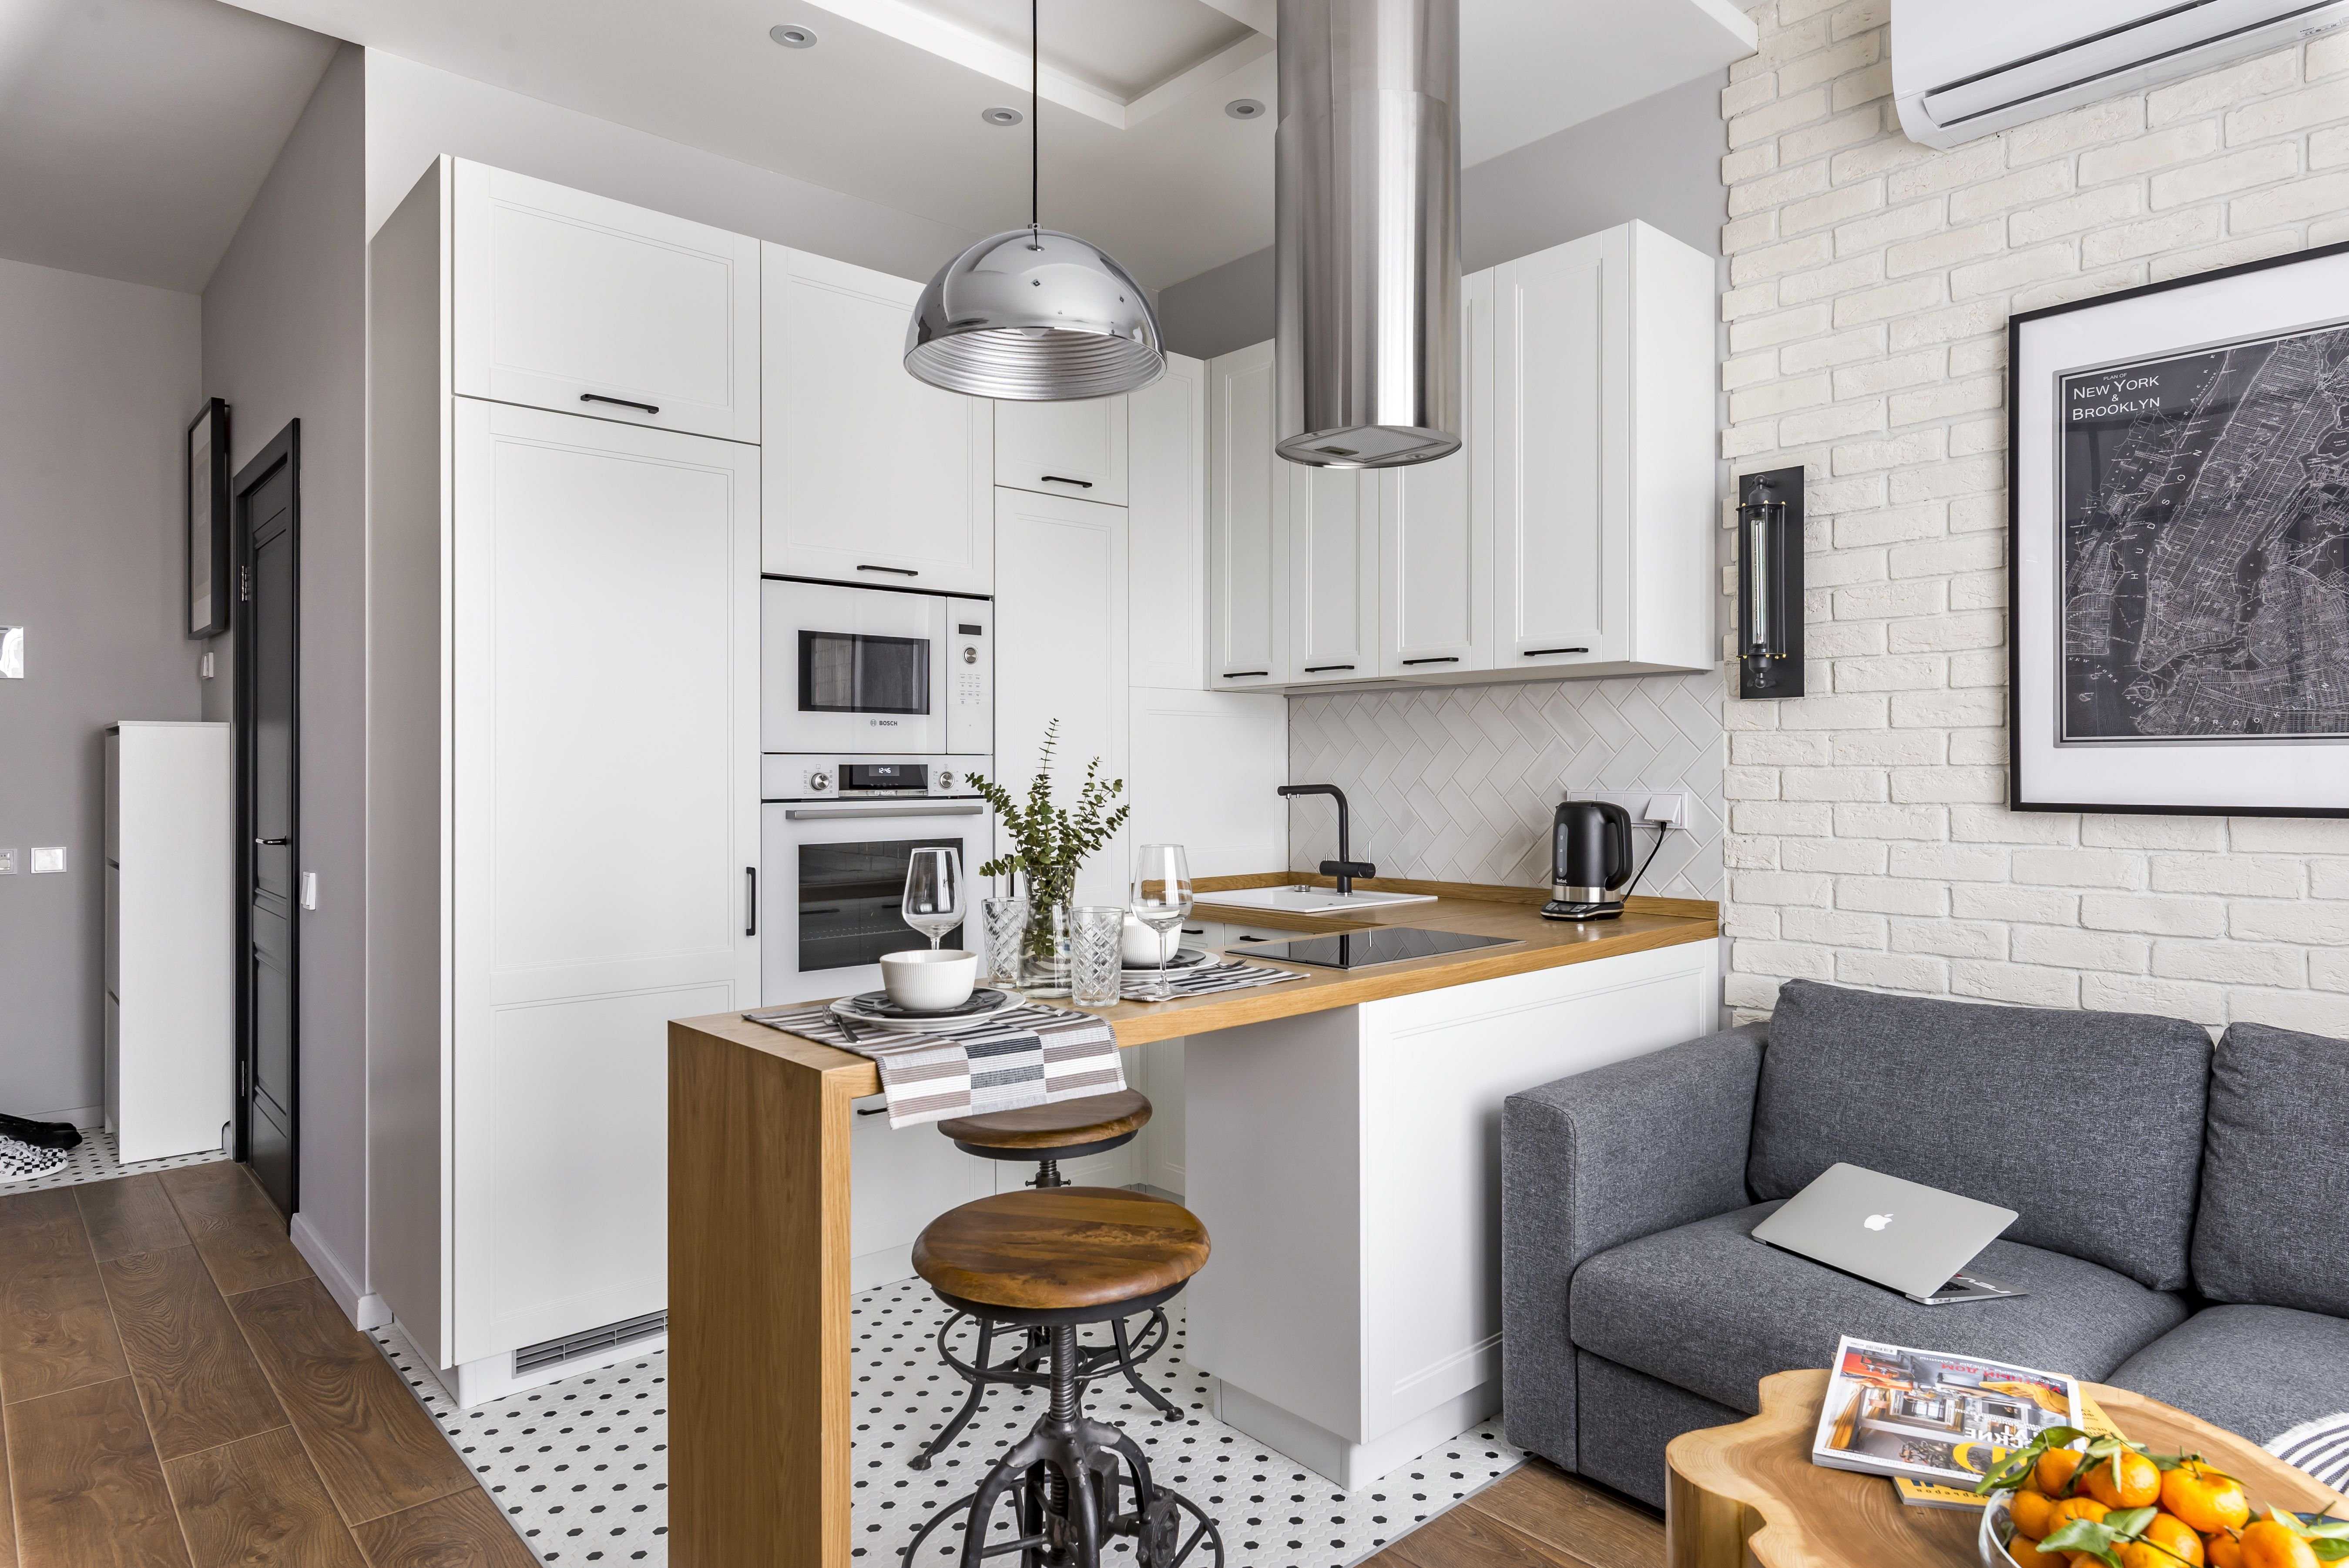 Одним из основных правил при создании кухни студии выступает то, что дизайн оформления и отделки в зоне гостиной и в кухонной части должен быть в едином стиле